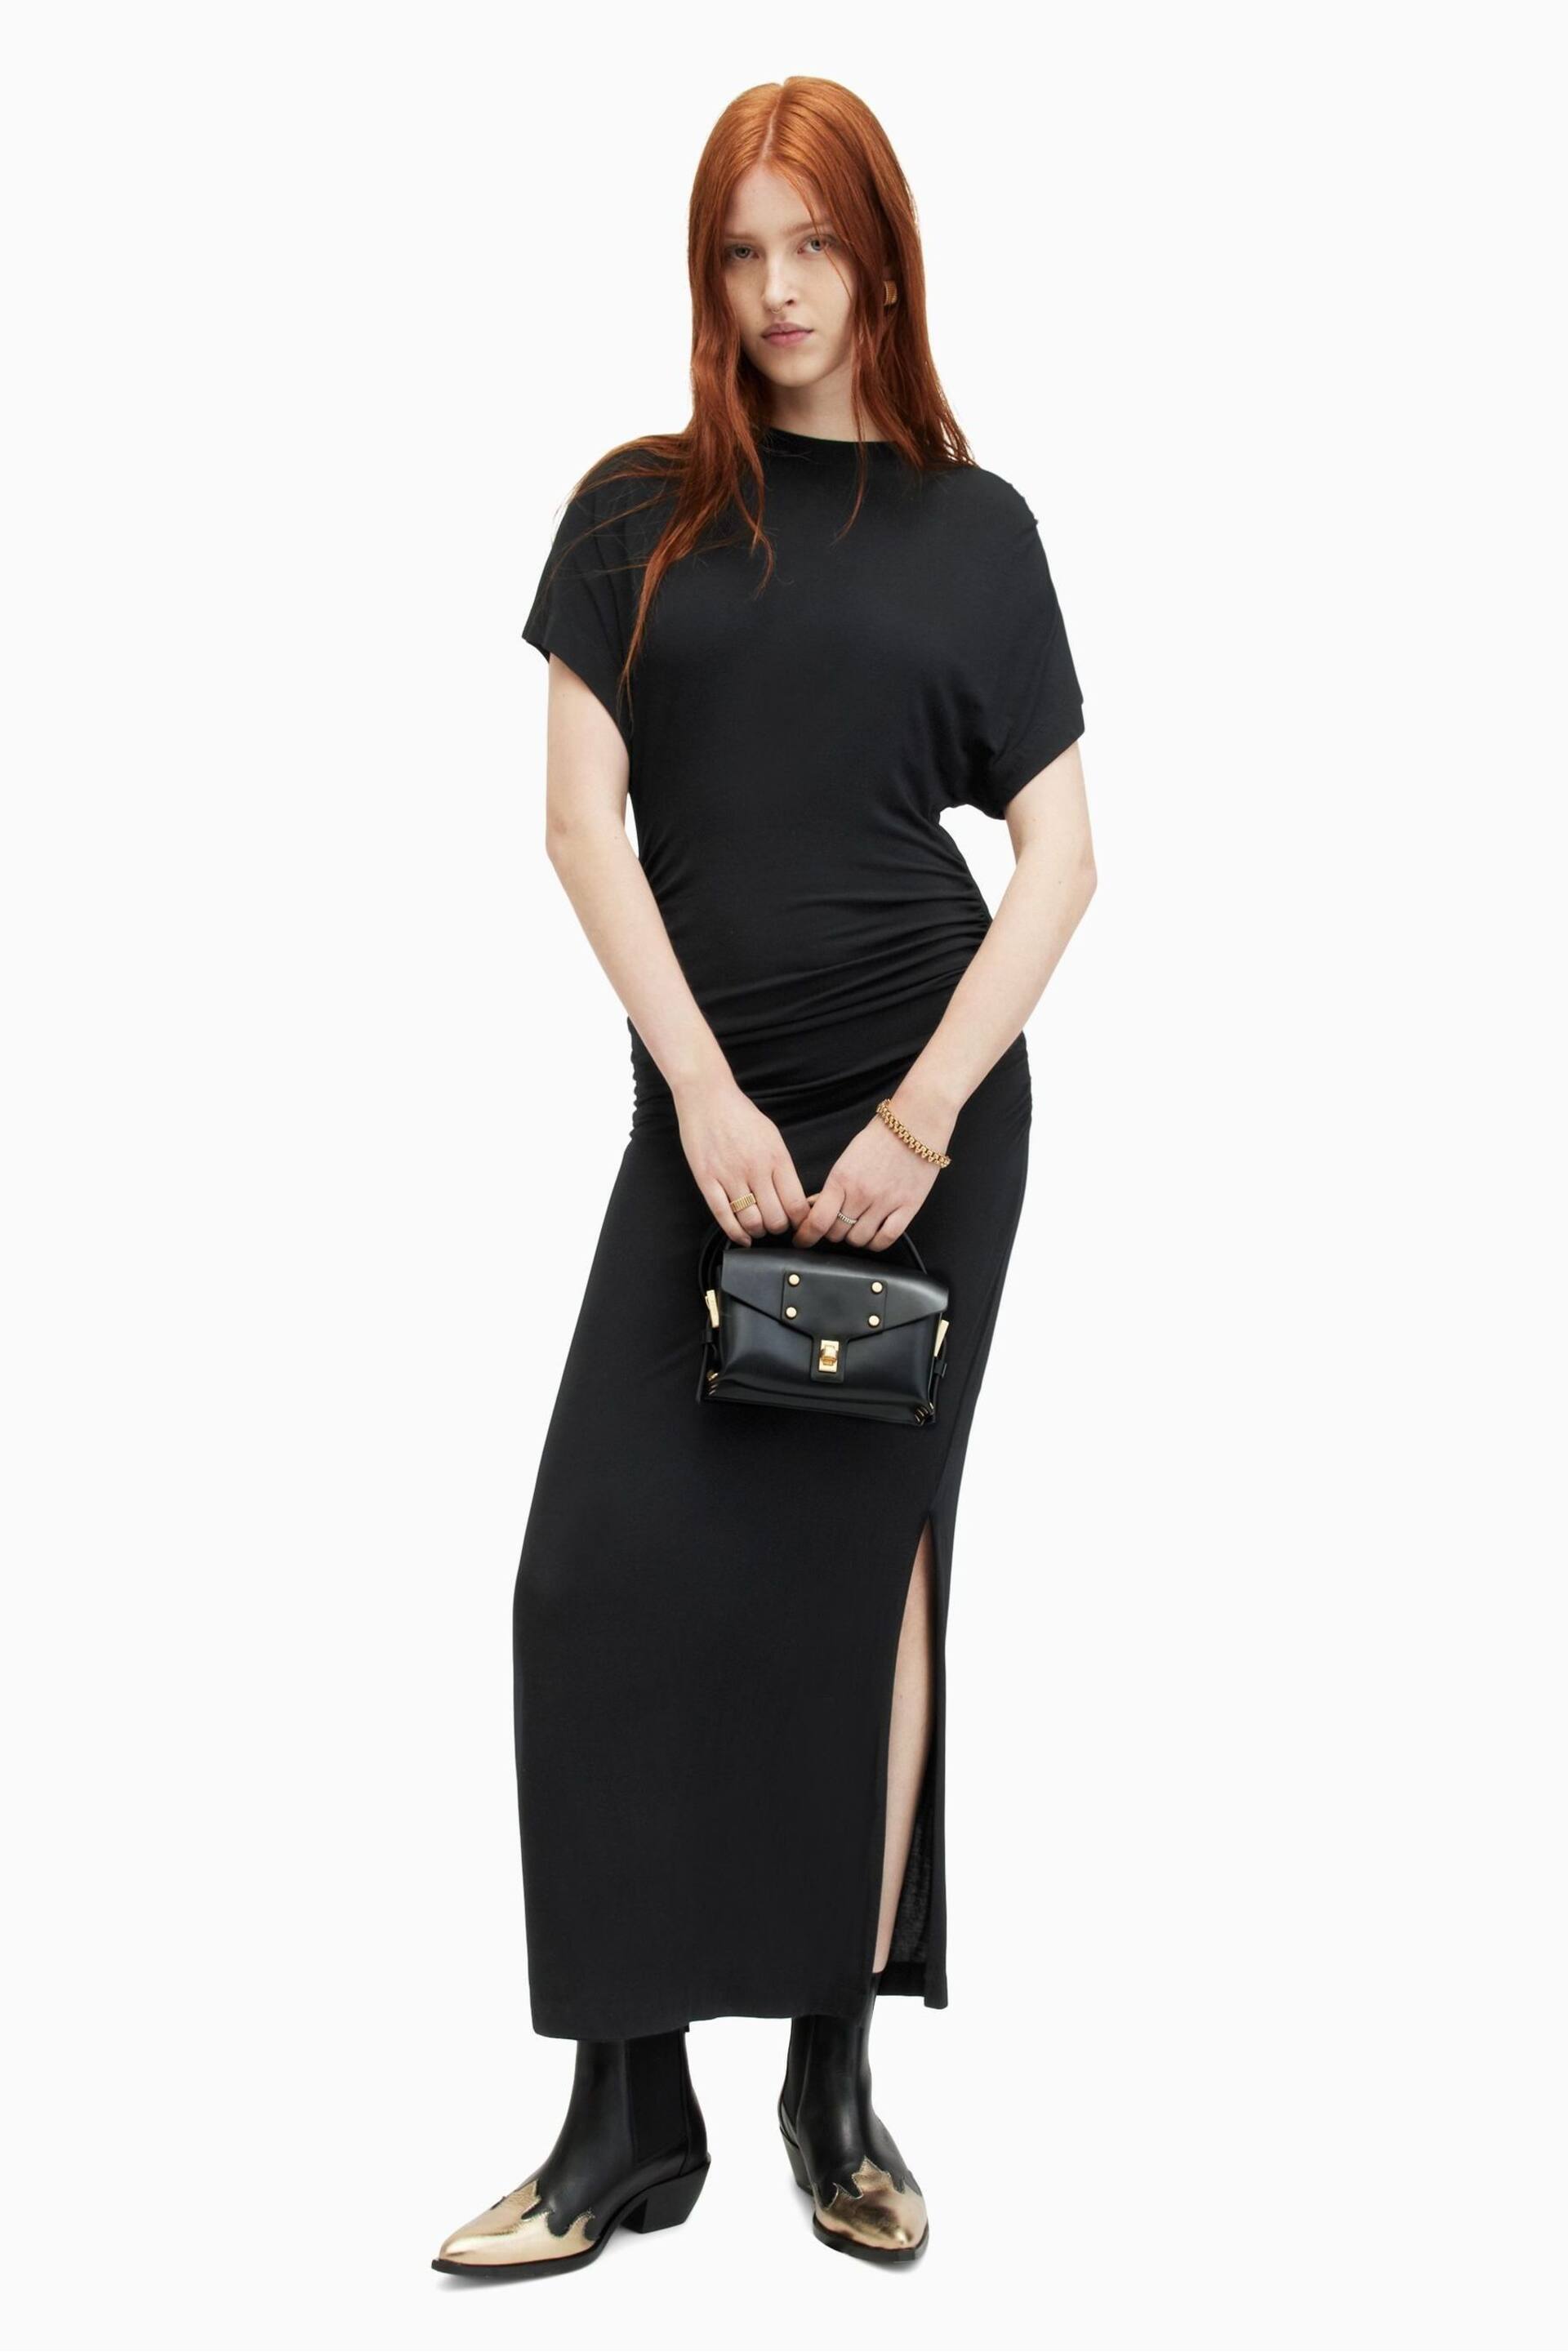 AllSaints Black Natalie Dress - Image 1 of 7